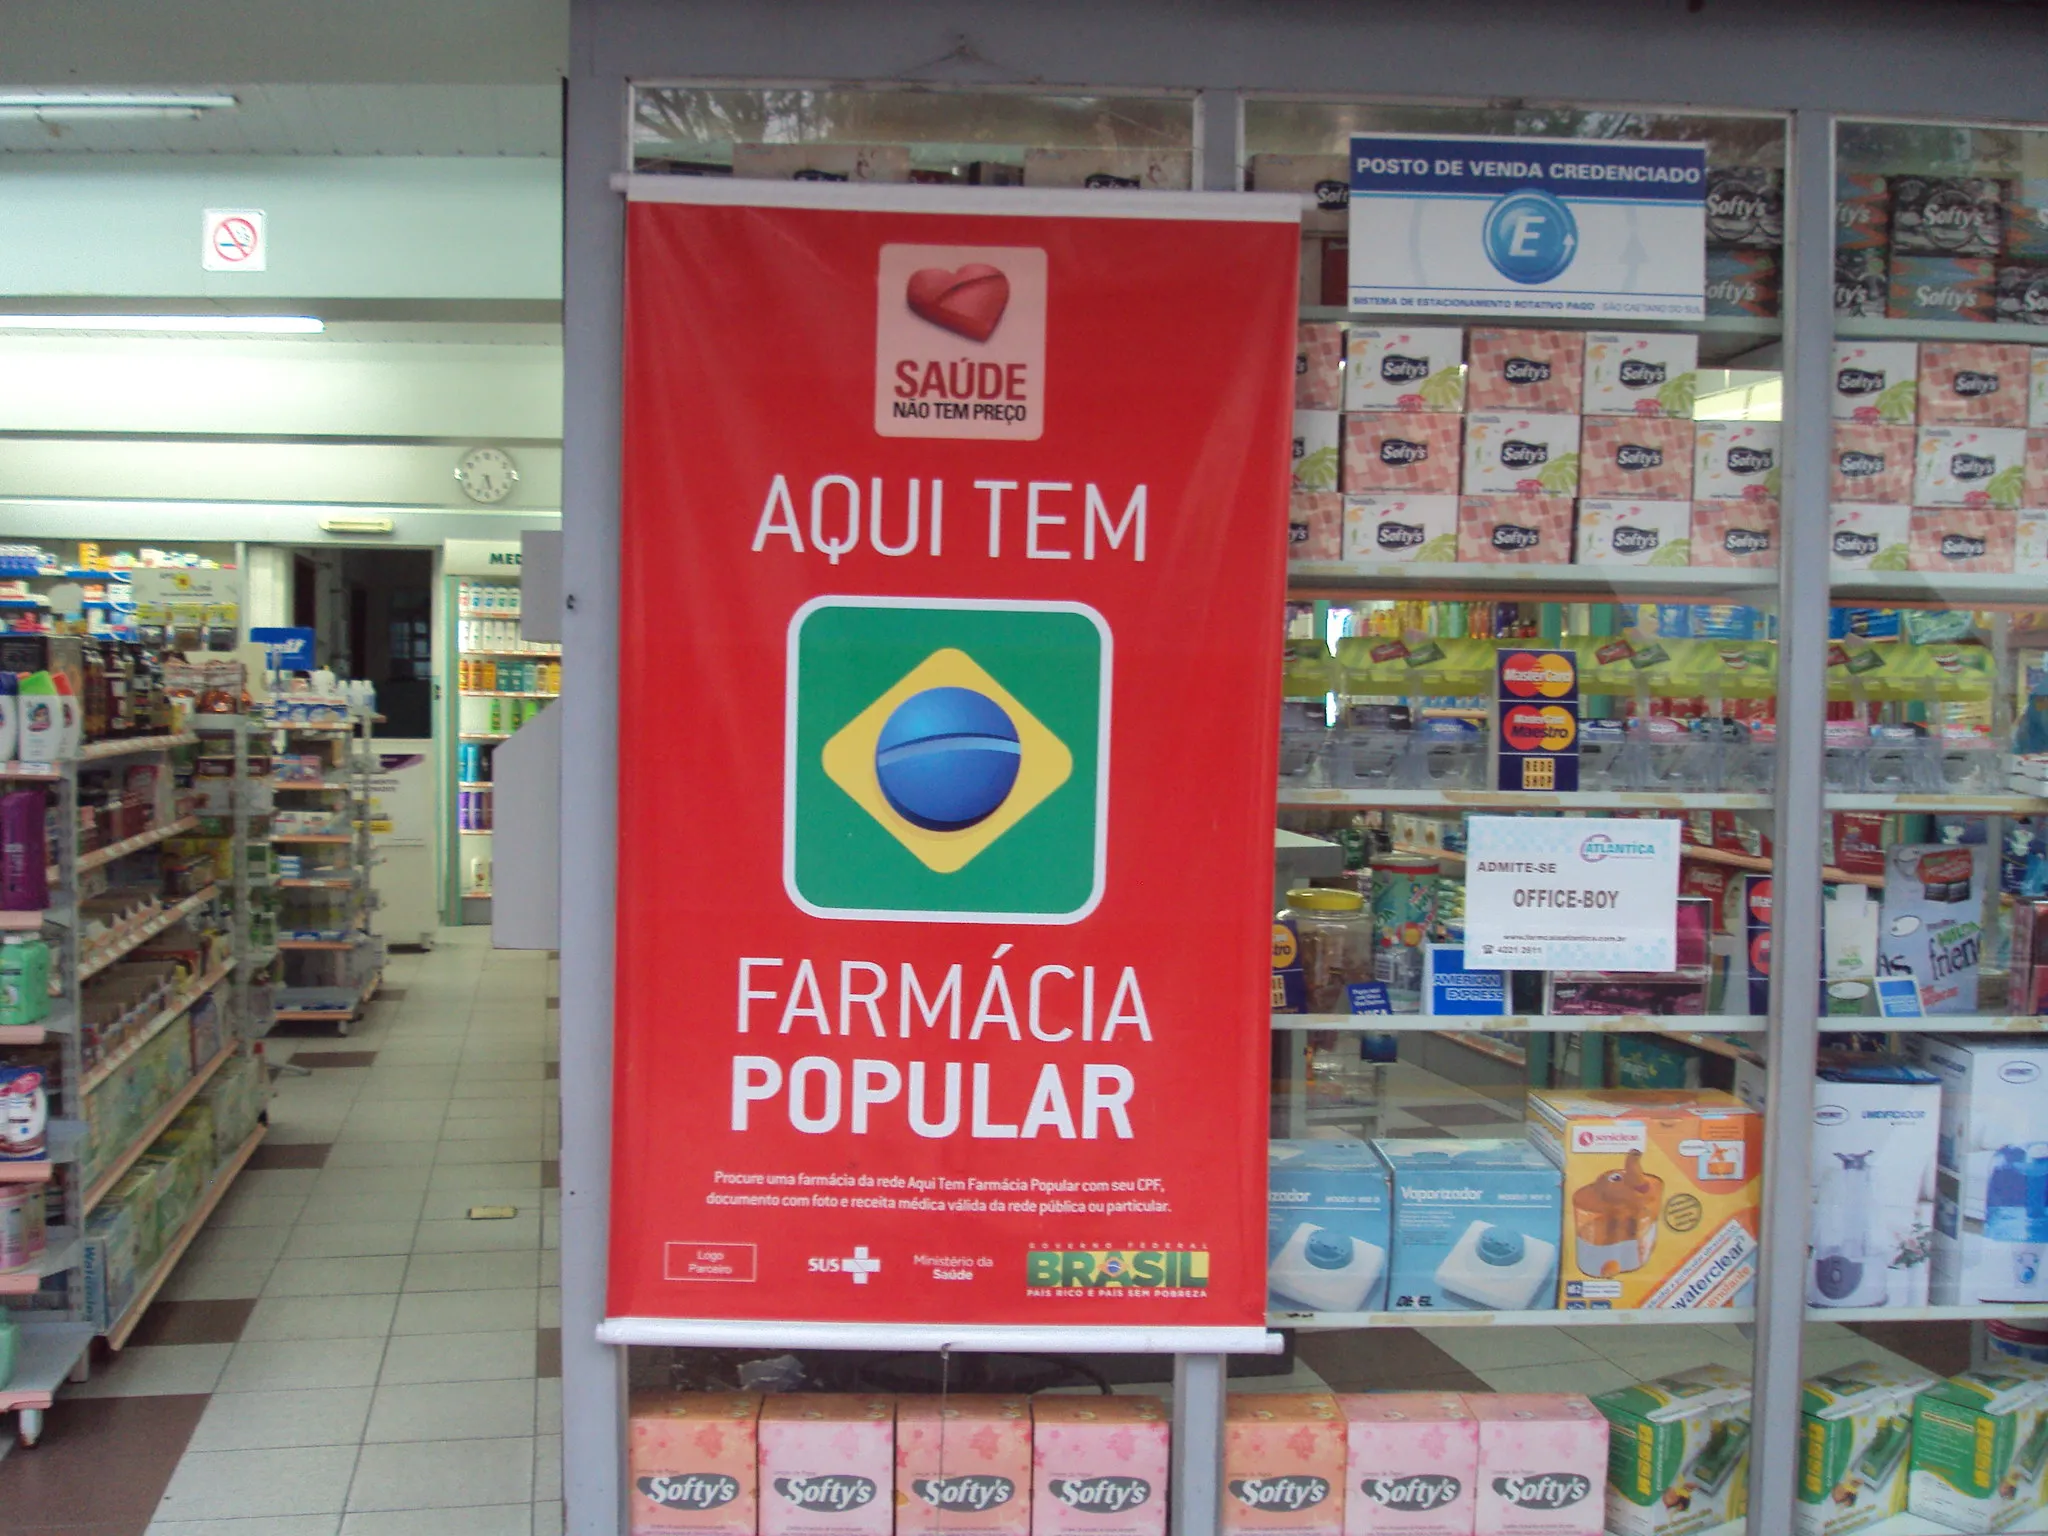 Presidente Lula (PT) disse que o programa foi “ironizado e diminuído” pelo governo passado